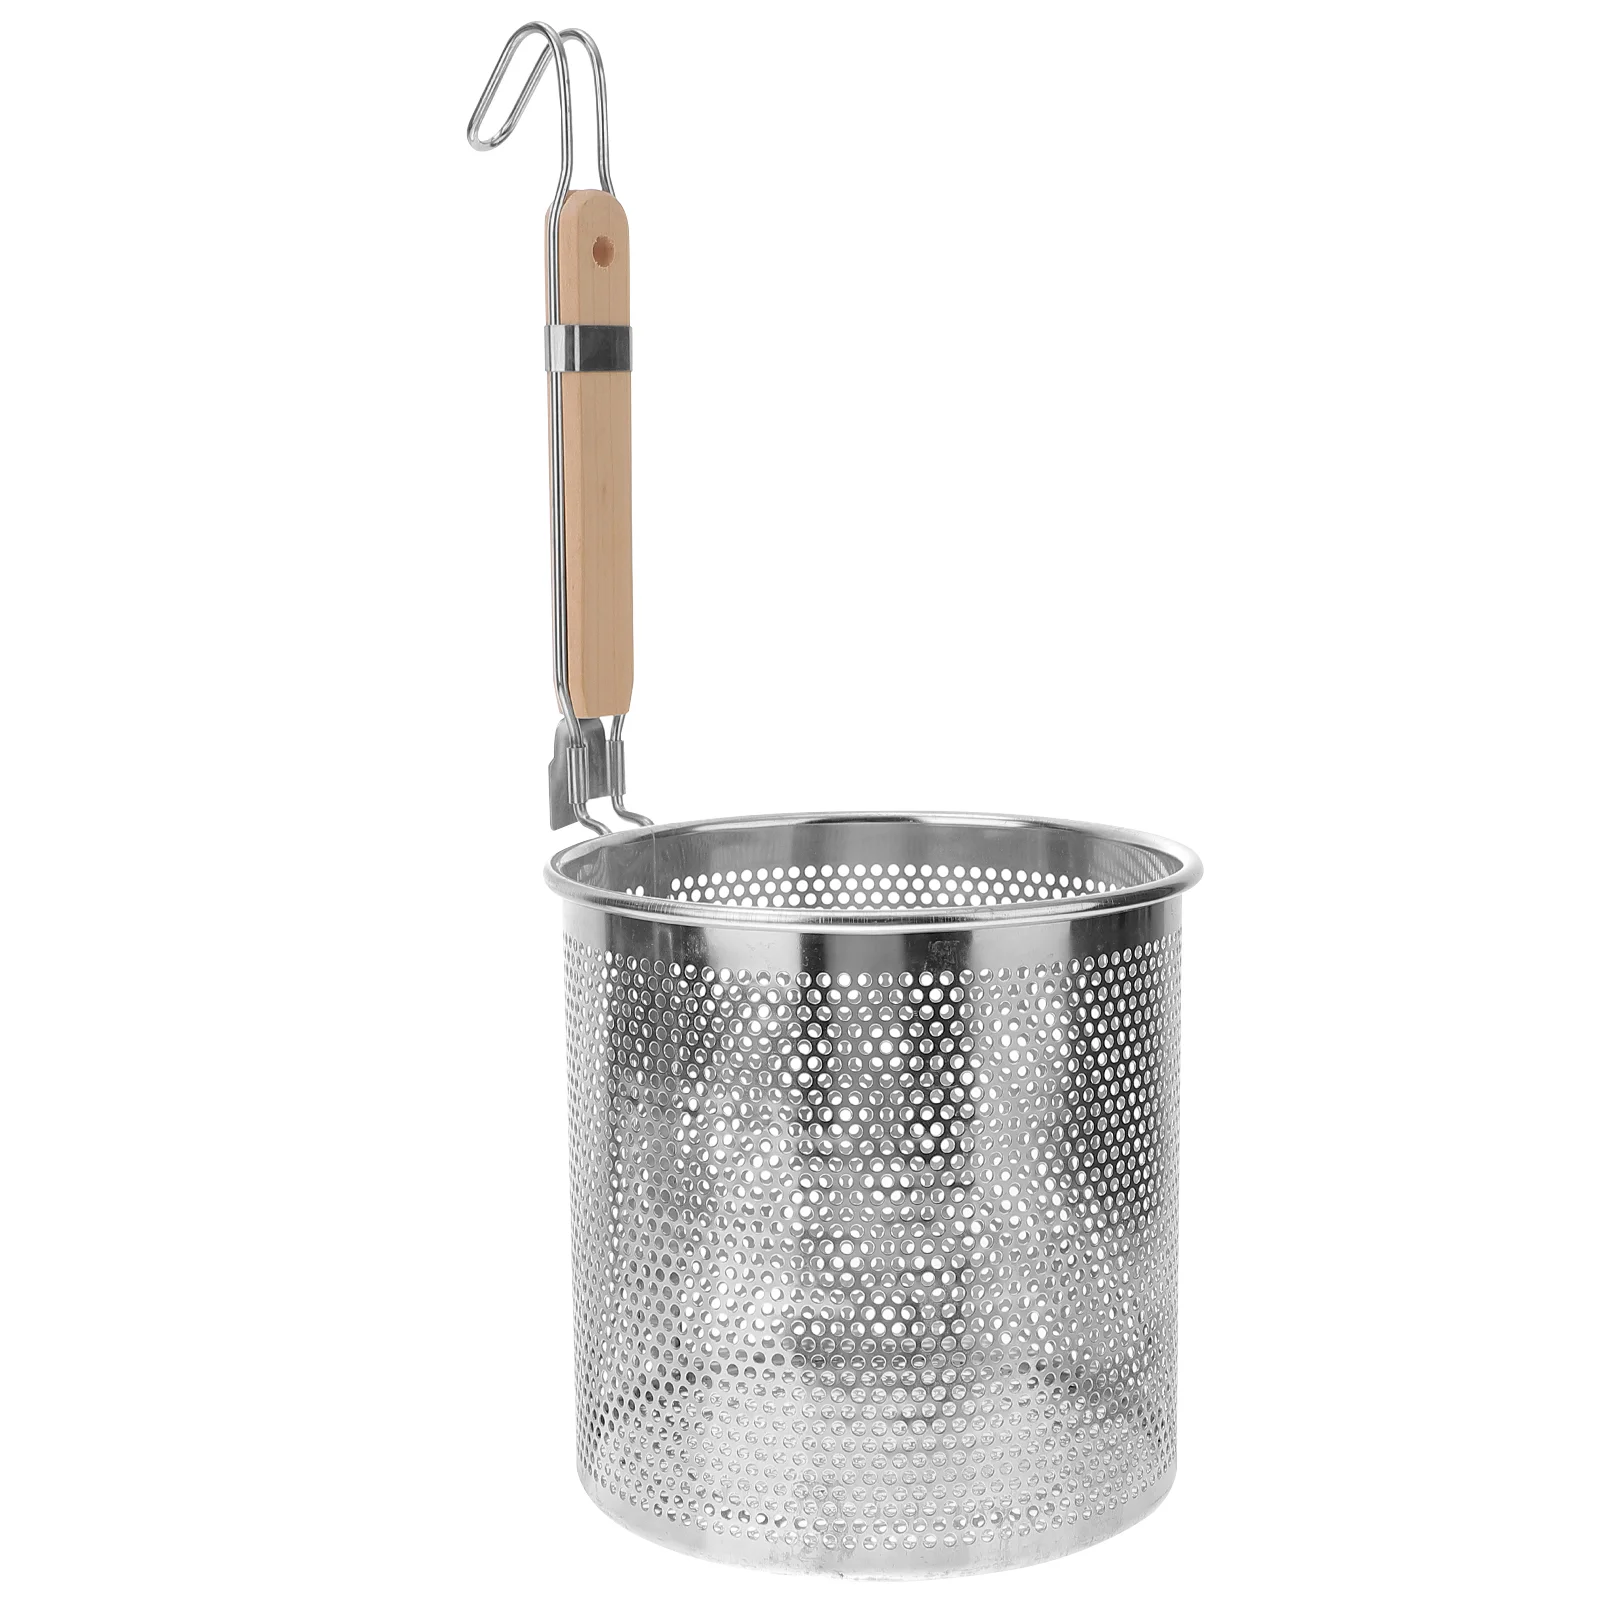 

Ложка-фильтр из нержавеющей стали дуршлаг, рамен, прочный кухонный инструмент, кухонная утварь, практичная кухонная утварь для домашнего приготовления спагетти